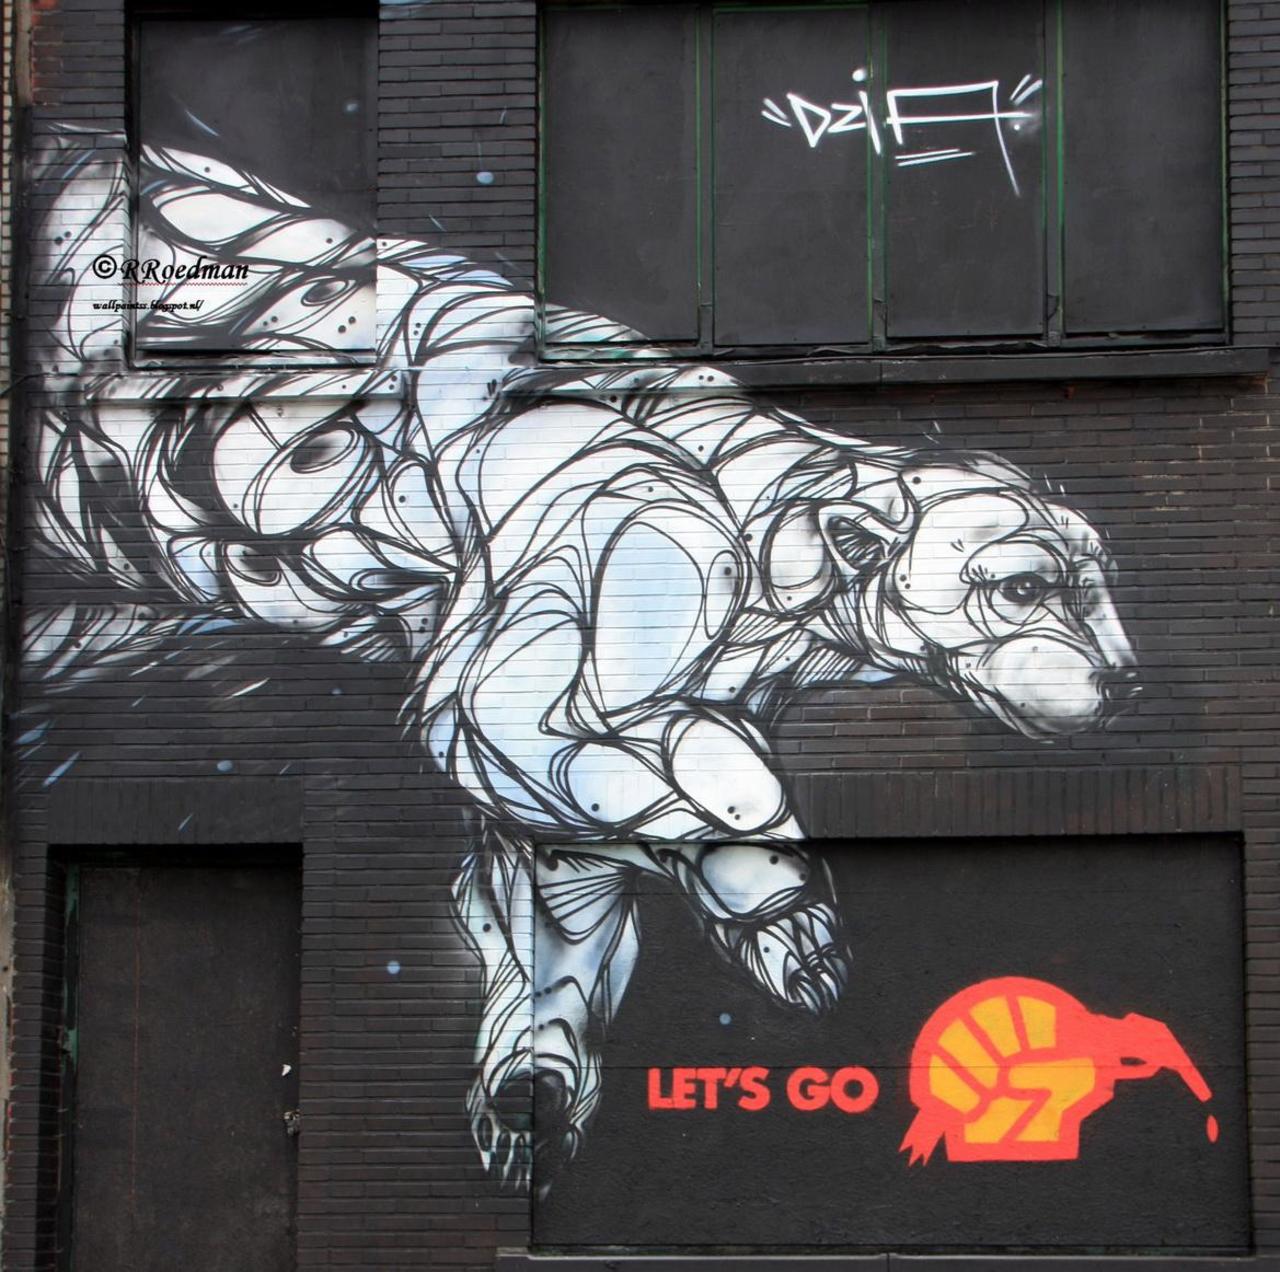 RT @RRoedman: #streetart #graffiti #mural Polar bear in #Berchem #Antwerpen from #Dzia,2 pics at http://wallpaintss.blogspot.nl http://t.co/Yd06IPLehq